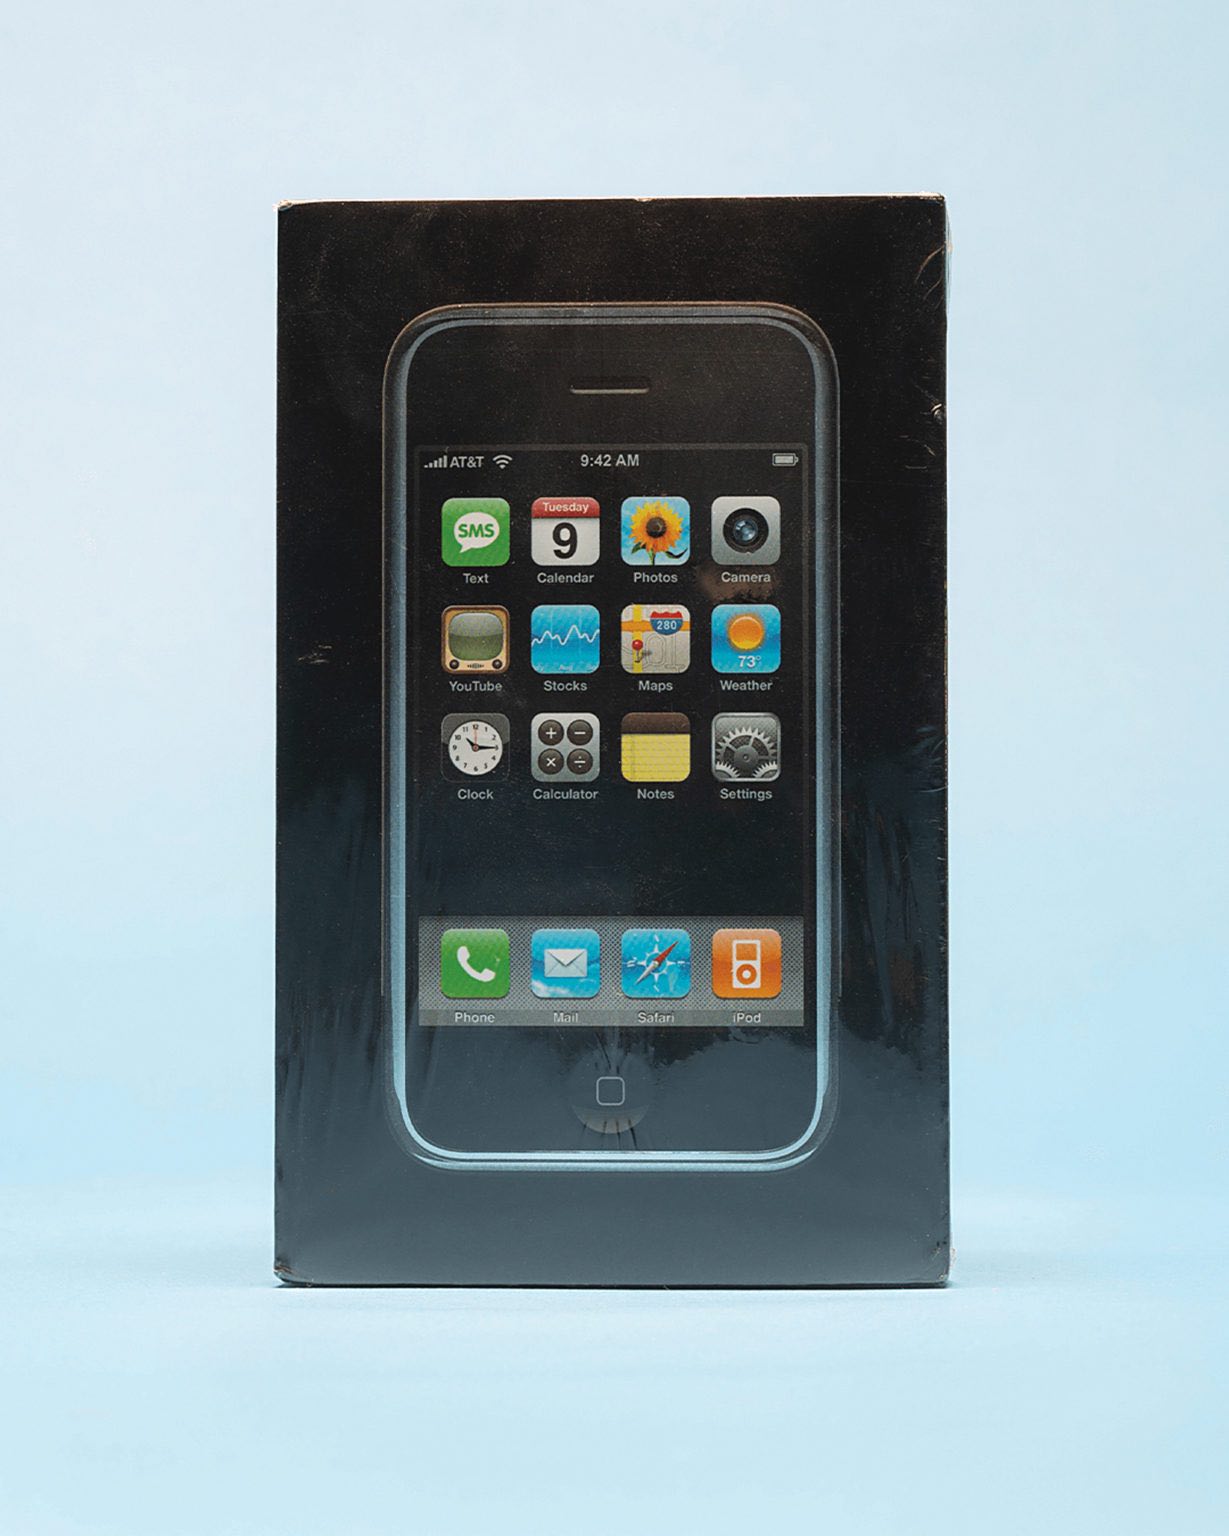 Czy masz iPhone z 2007 roku? Może być wart duuużo pieniędzy ciekawostki iPhone z 2007, iPhone 2G  Masz pierwszego iPhone z 2007 roku? Jeśli tak, to możesz naprawdę sporo zarobić. Zobacz za ile został wystawiony na aukcji zafoliowany model pierwszego smartfona Apple. iP2g 1